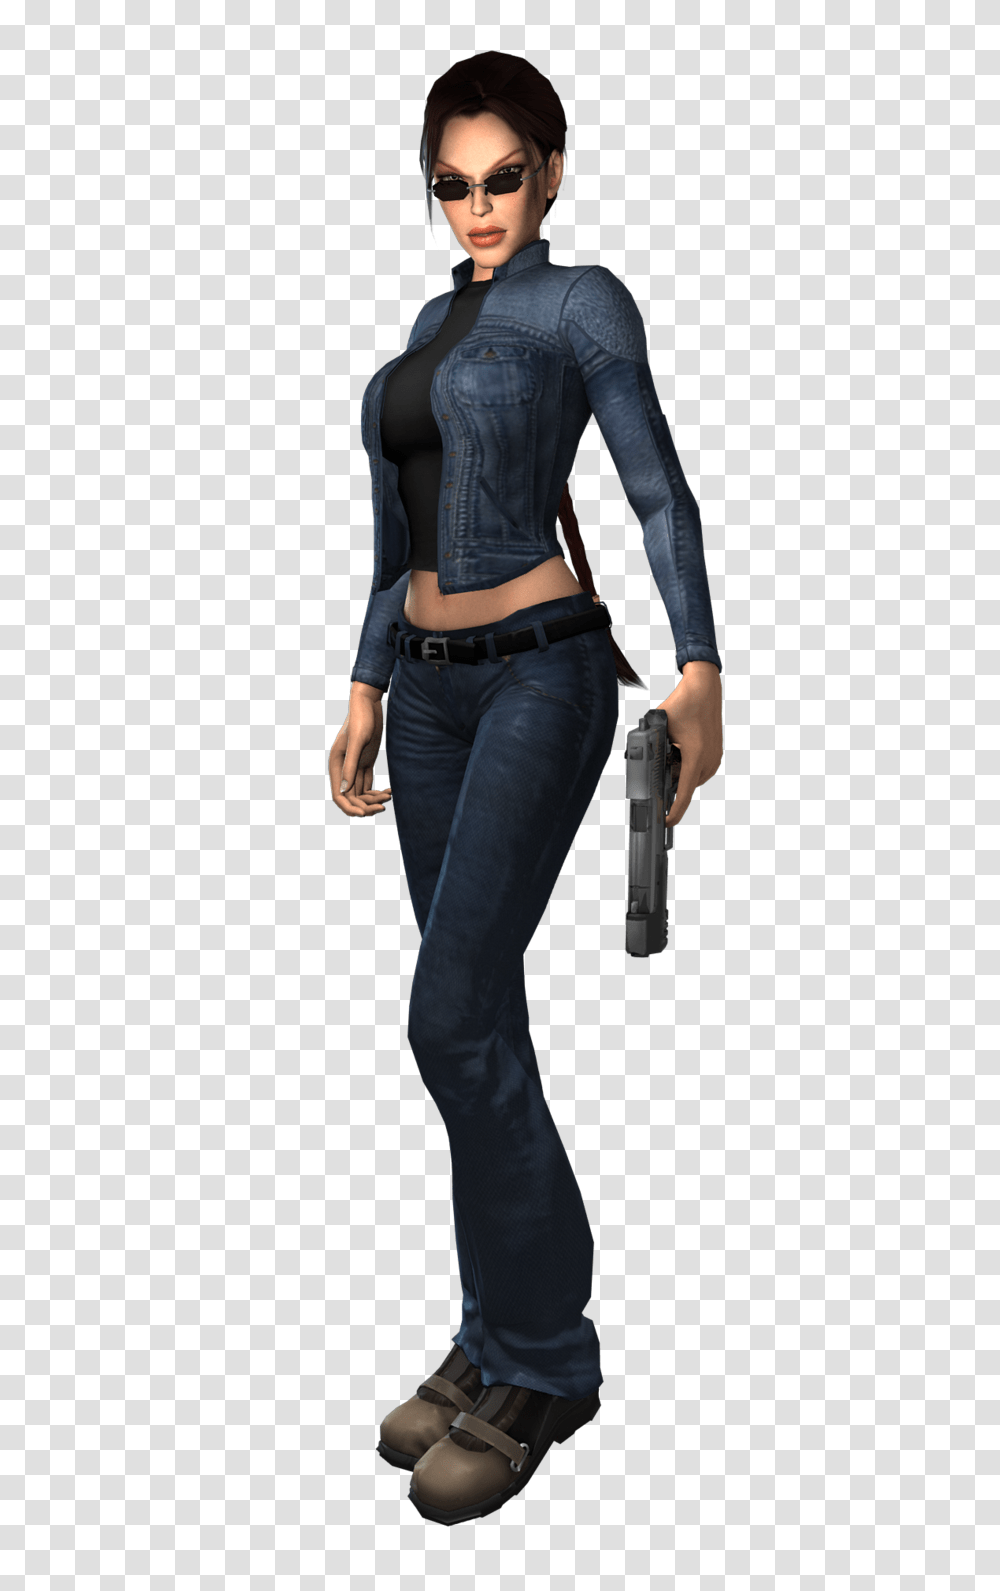 Lara Croft, Character, Person, Sunglasses Transparent Png